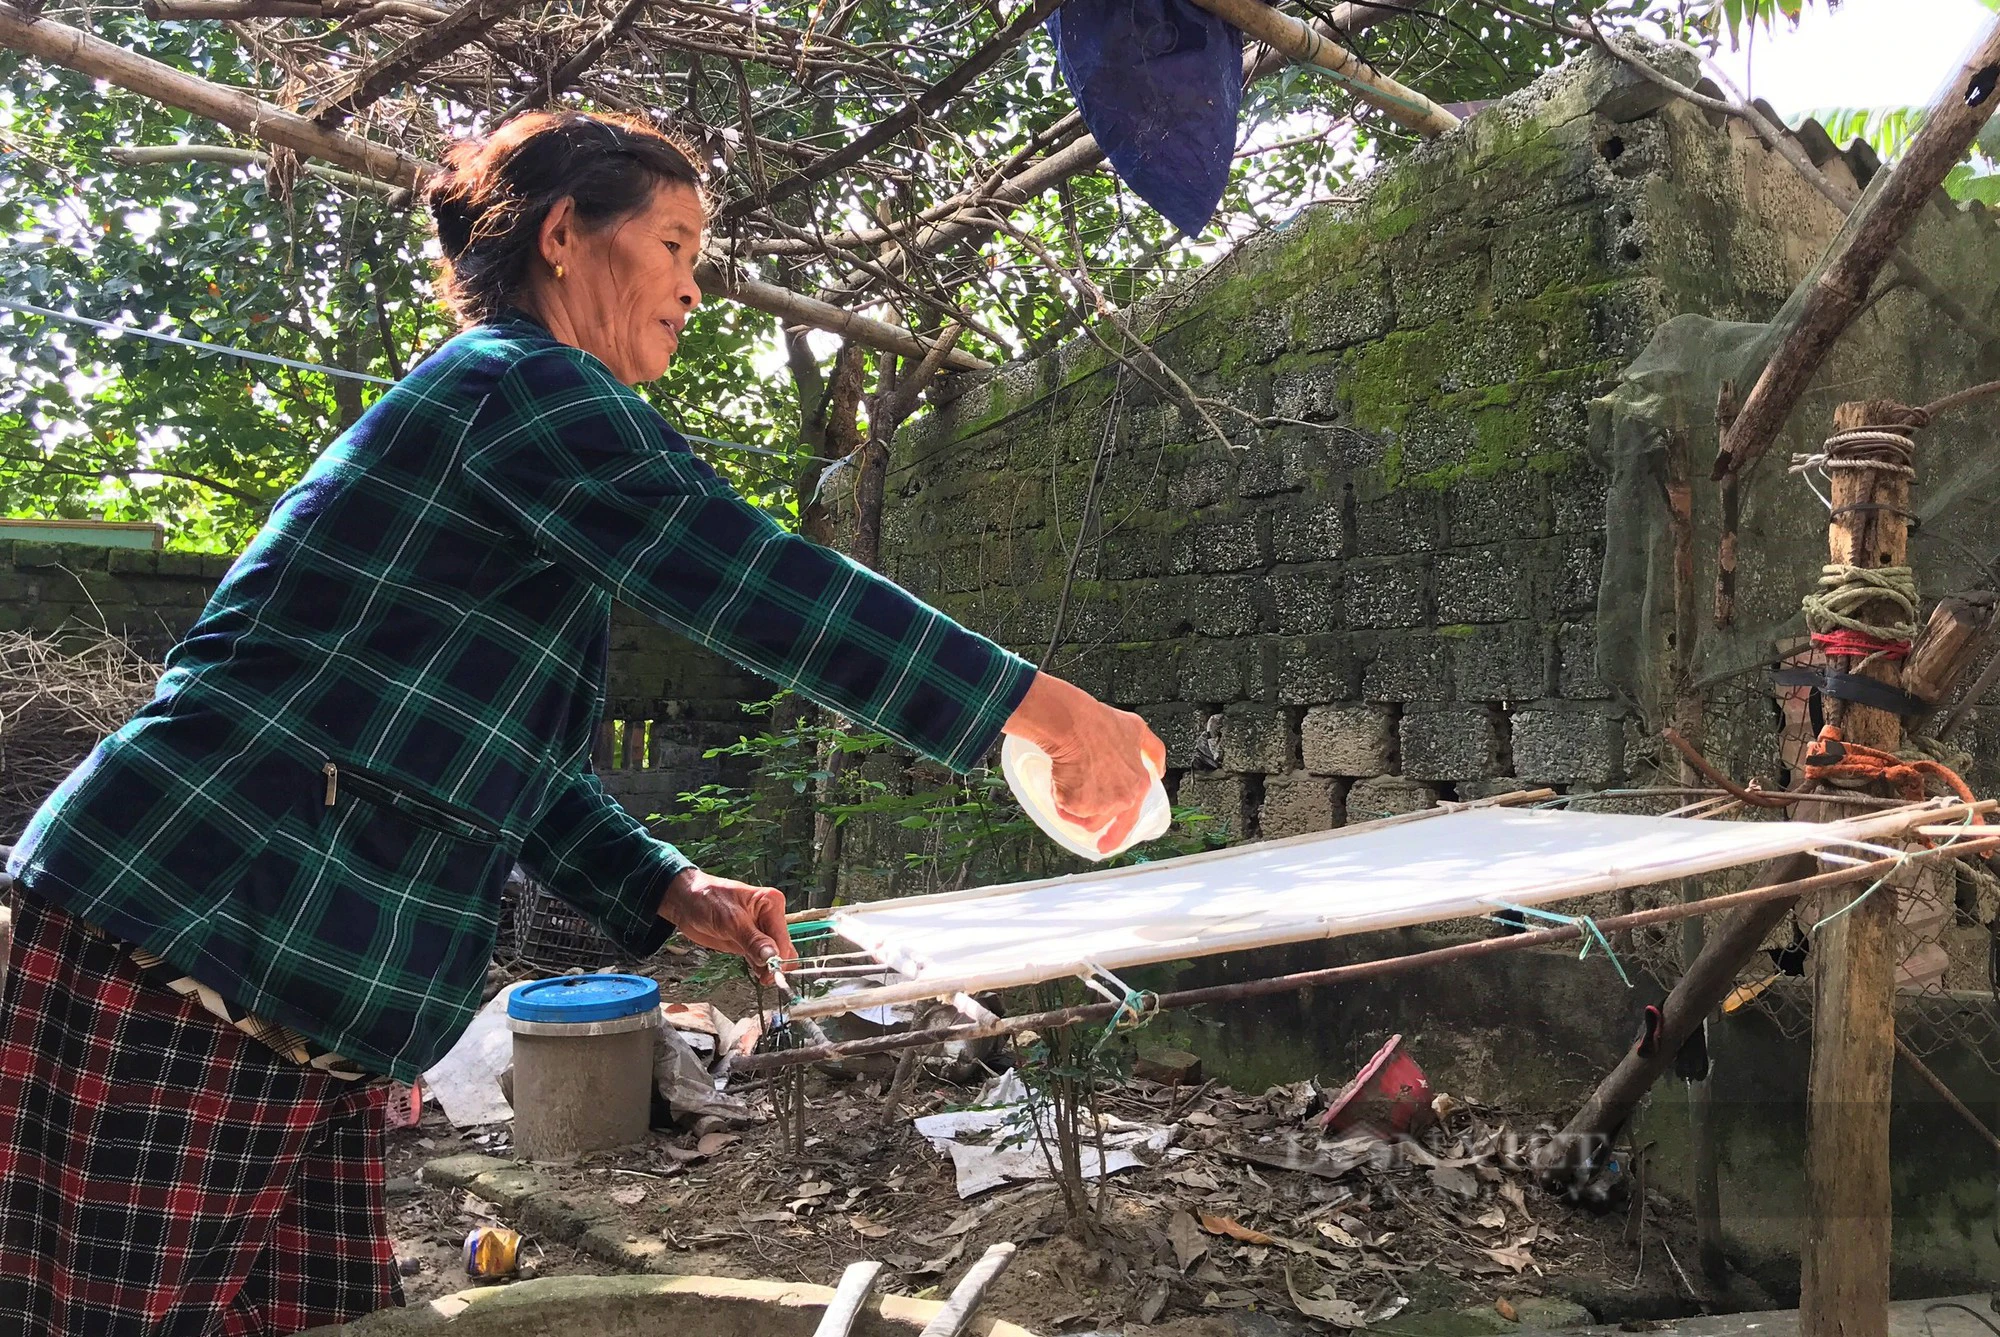 Làng duy nhất ở Nghệ An còn giữ một nghề độc lạ, giã cây lấy nước tráng loại giấy dó mỏng tanh - Ảnh 2.